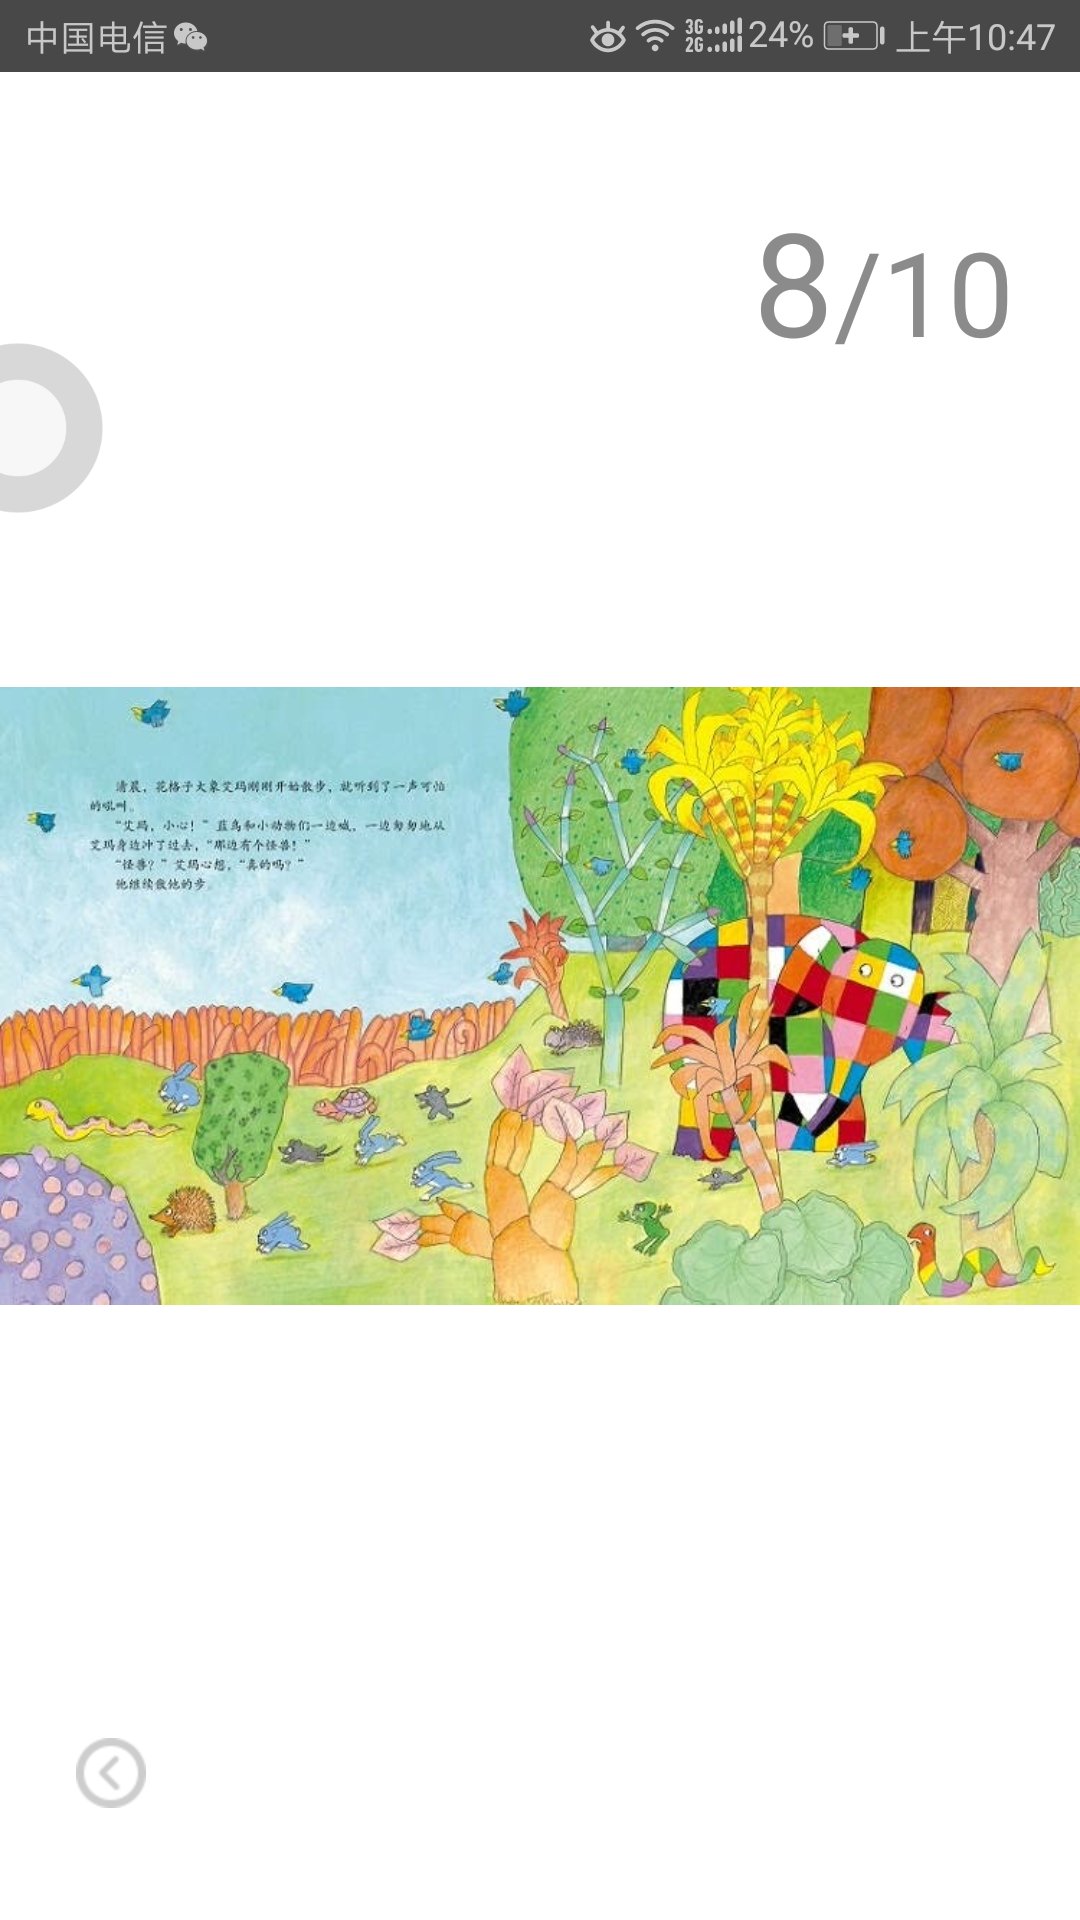 虽然等很久，但是很值得。花格子大象艾玛的故事，图画赏心悦目，道理简单深远，艾玛不愧是孩子心目中挚爱的绘本主人公。